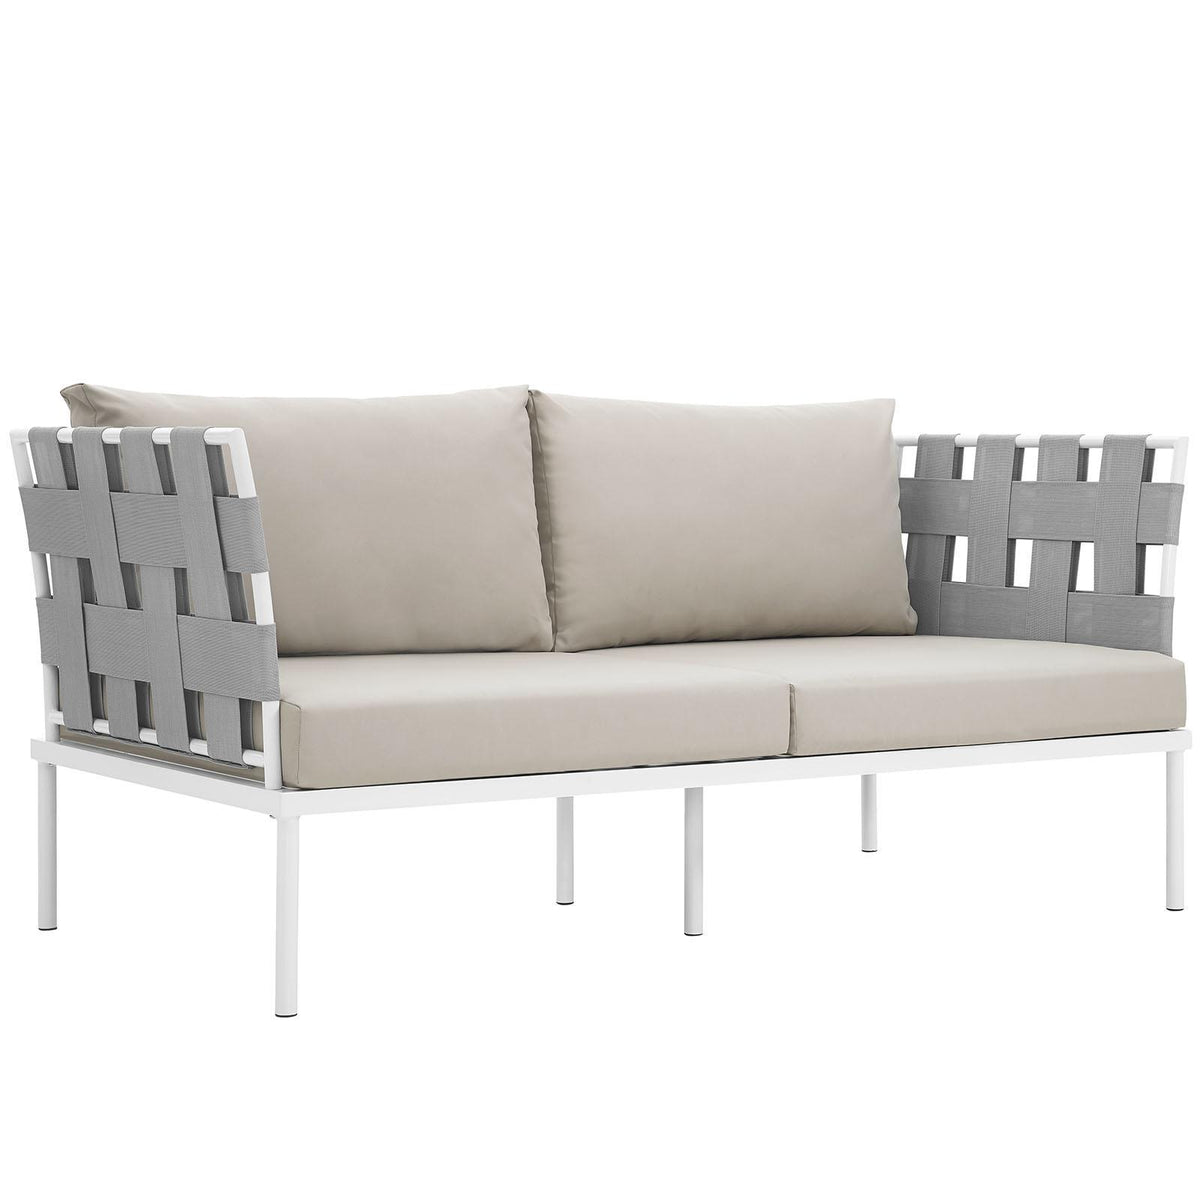 Modway Furniture Modern Harmony Outdoor Patio Aluminum Loveseat - EEI-2603